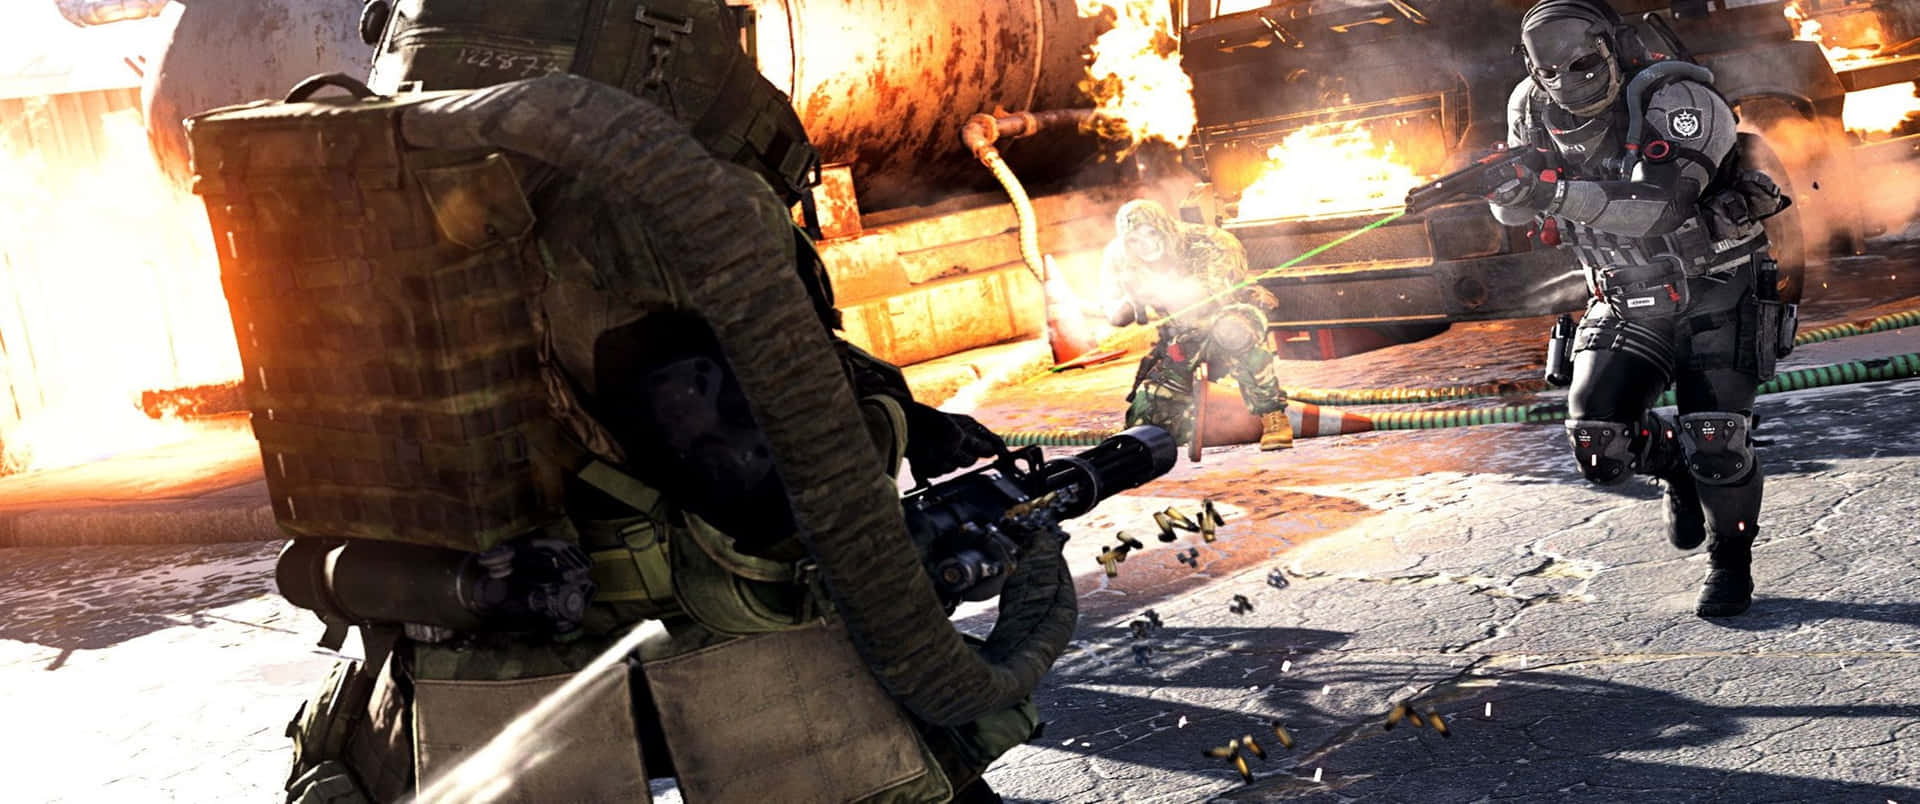 Fondode Pantalla Juggernaut De Call Of Duty Black Ops Cold War En Resolución 3440x1440p.